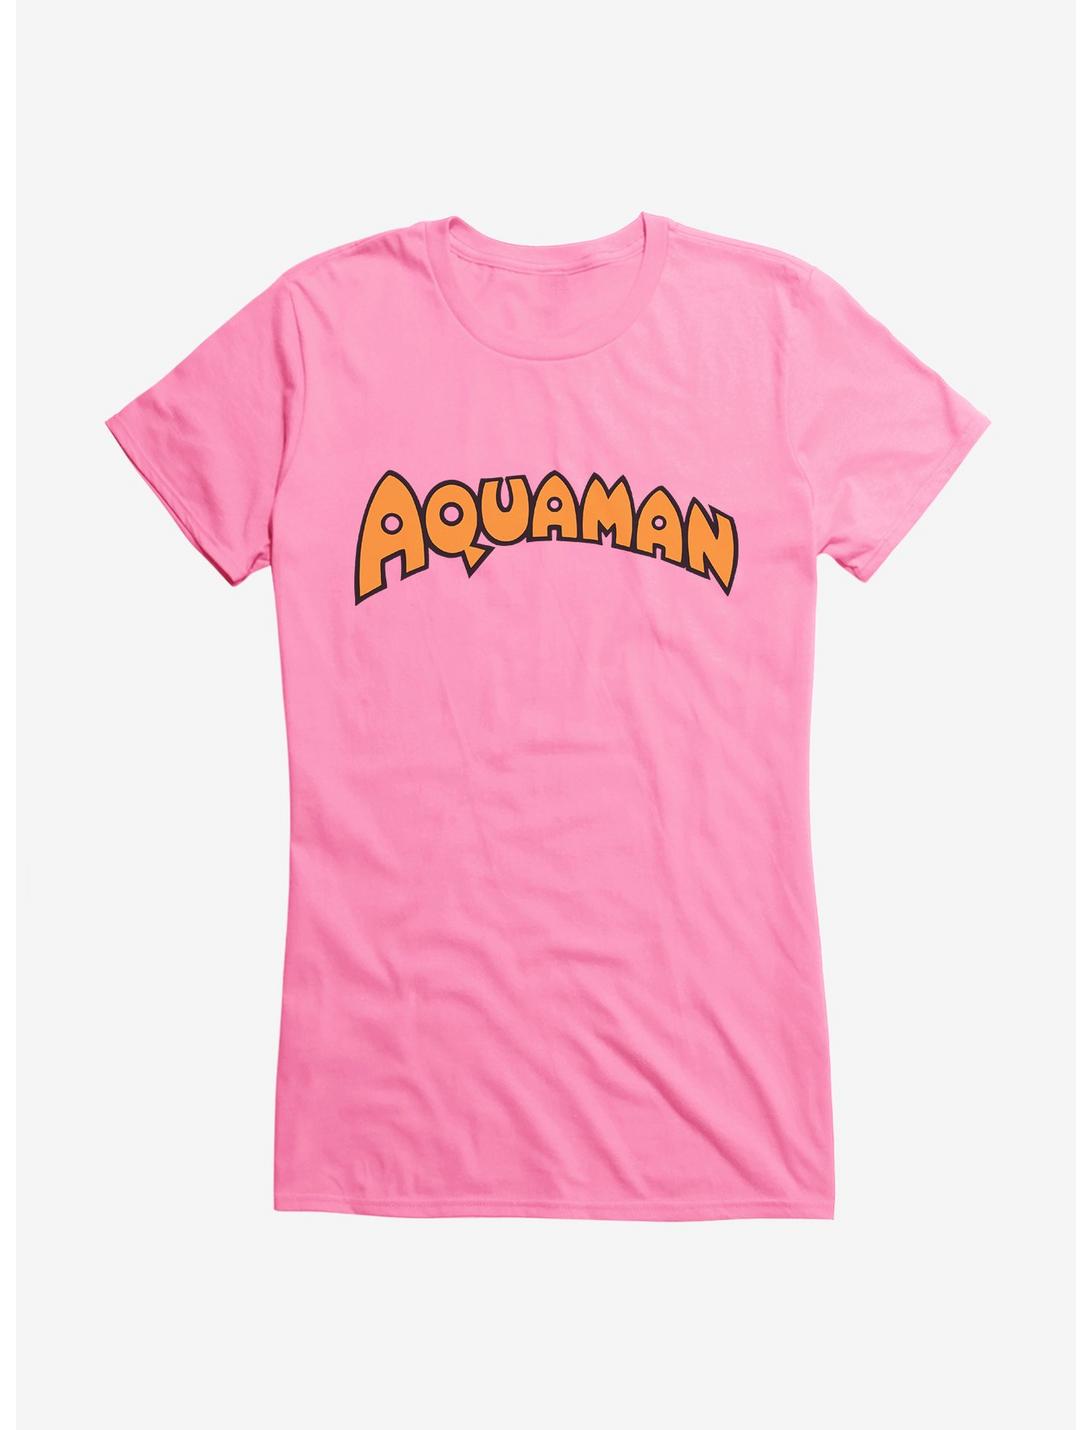 DC Comics Aquaman Vintage Silver Age Logo Girls T-Shirt, , hi-res